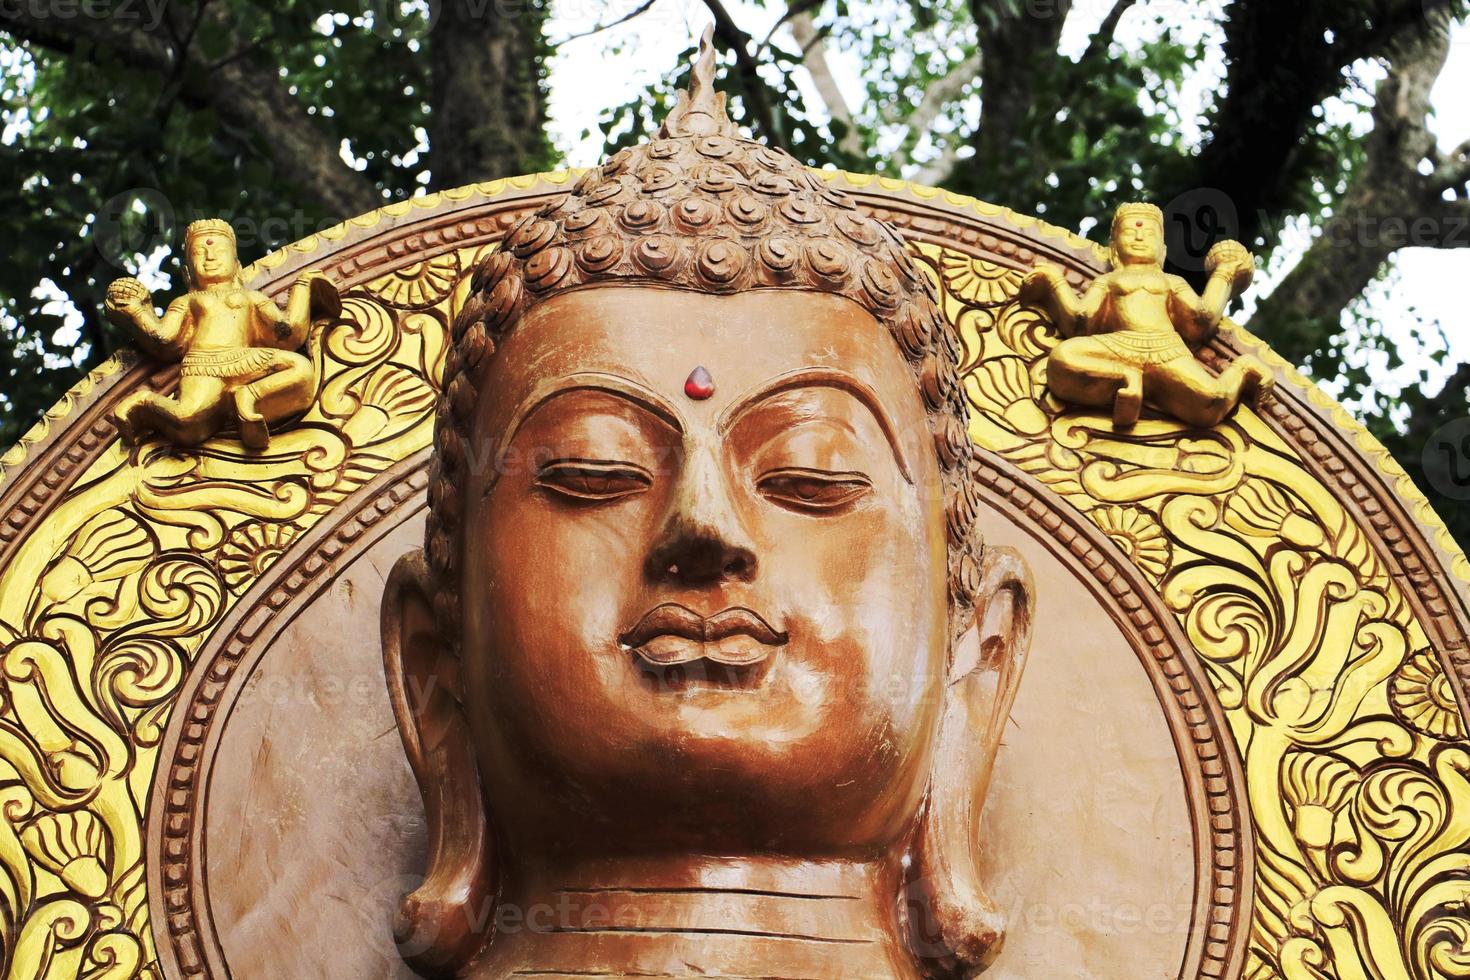 hoofd van boeddhabeeld. groot gouden hoofddeel van het standbeeld van Boedha in Thailand. foto